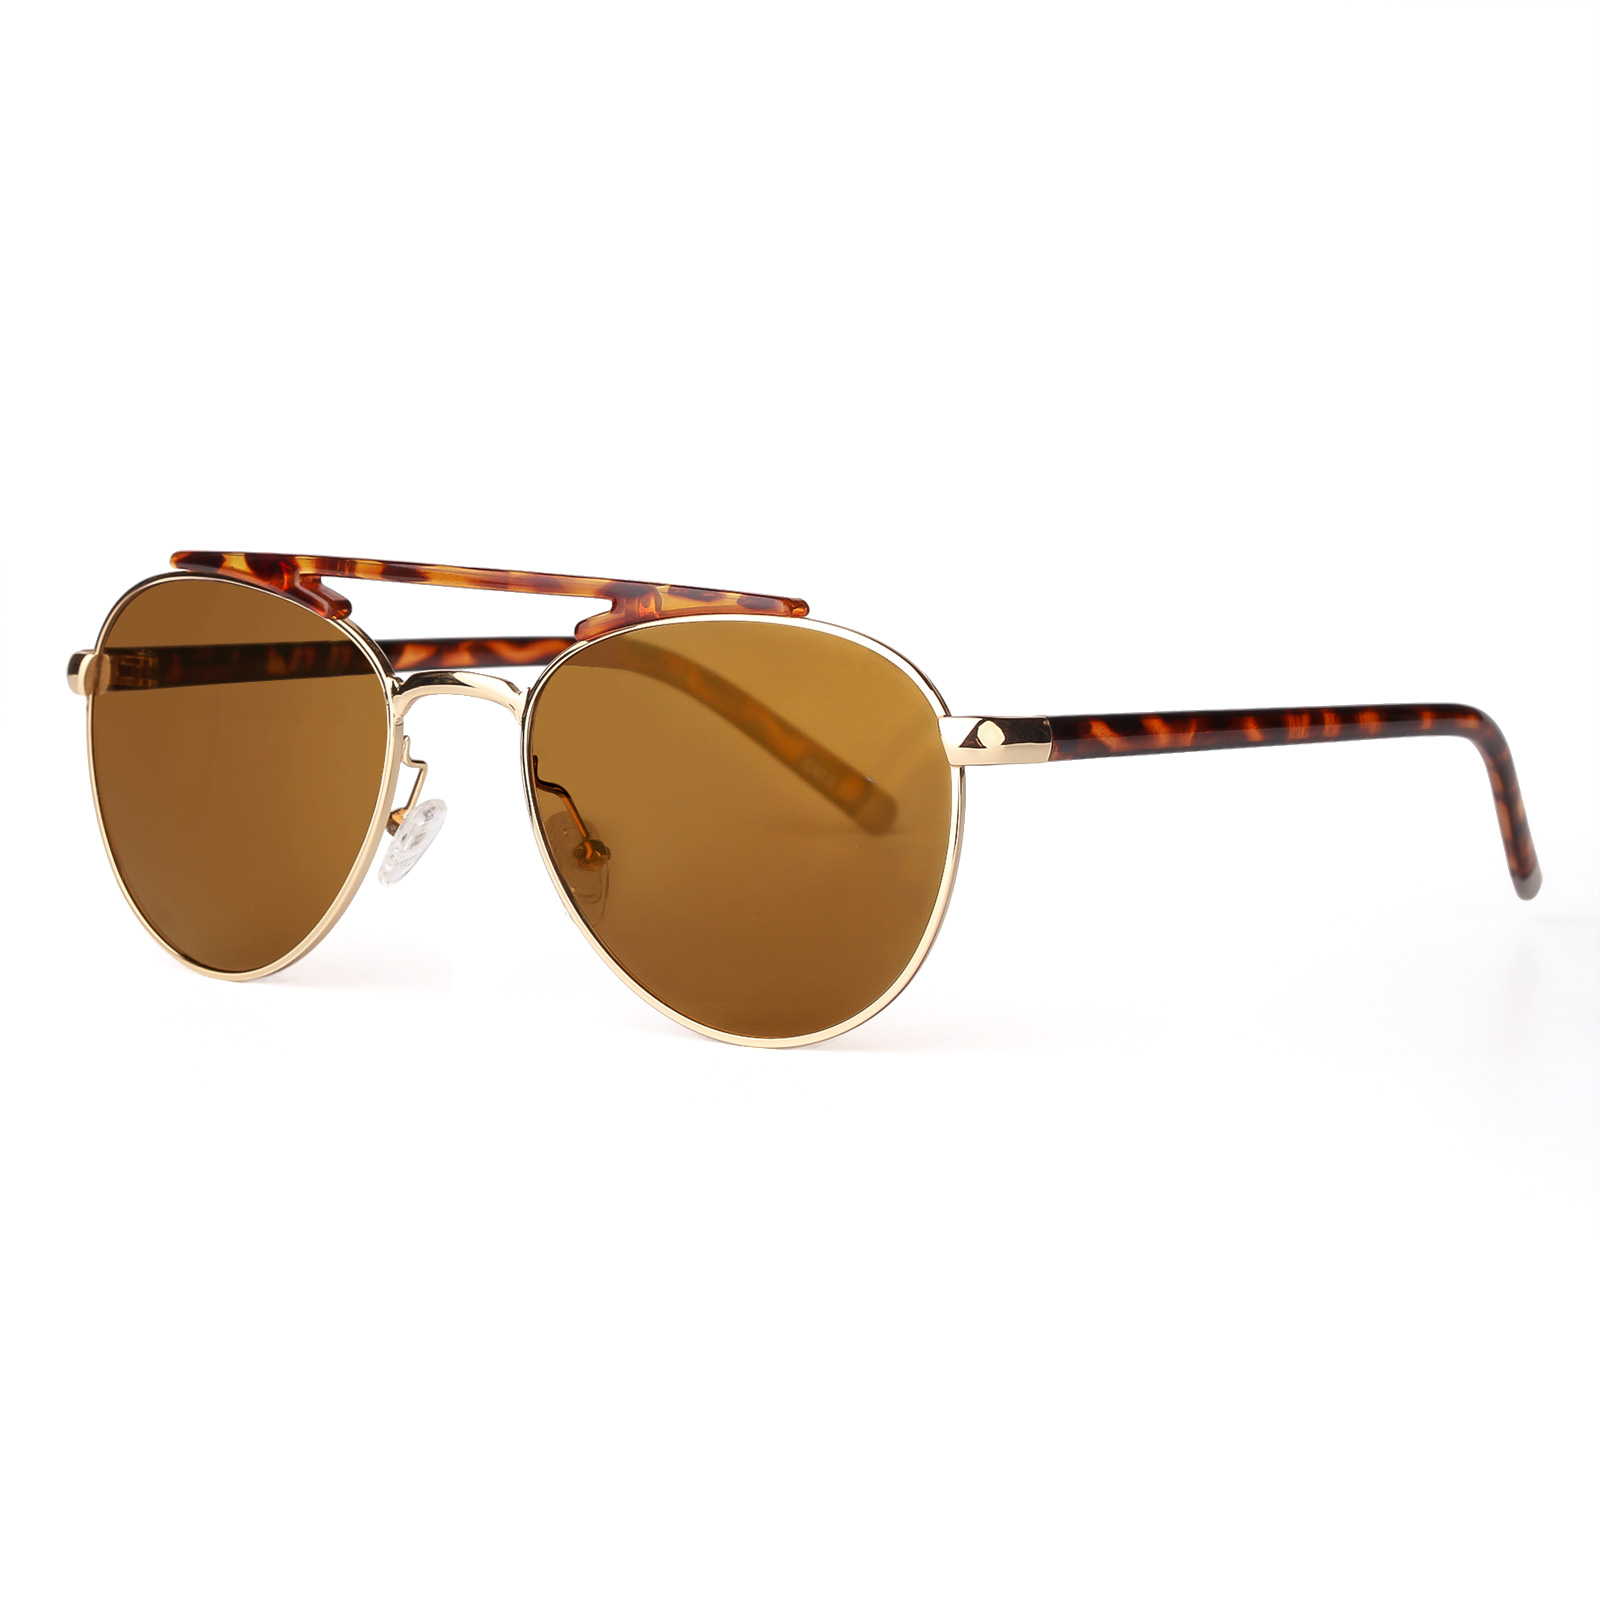 Sunglasses for Men Women Polarized Sun Glasses Oversized Metal Frame 100% uv protection